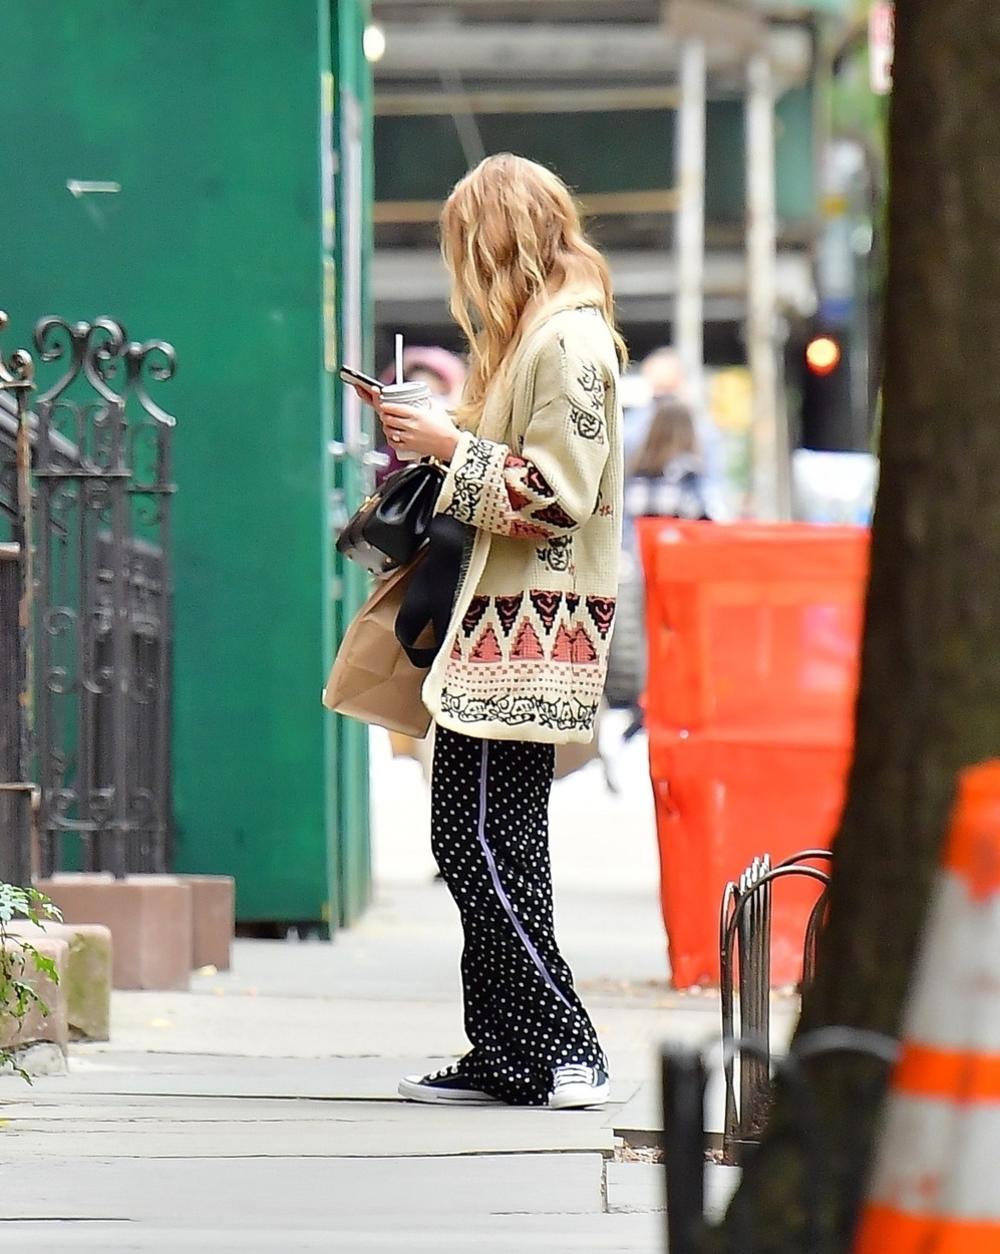 <p>Popularna glumica prošetala je njujorškim ulicama u vrlo interesantnom stajlingu</p>